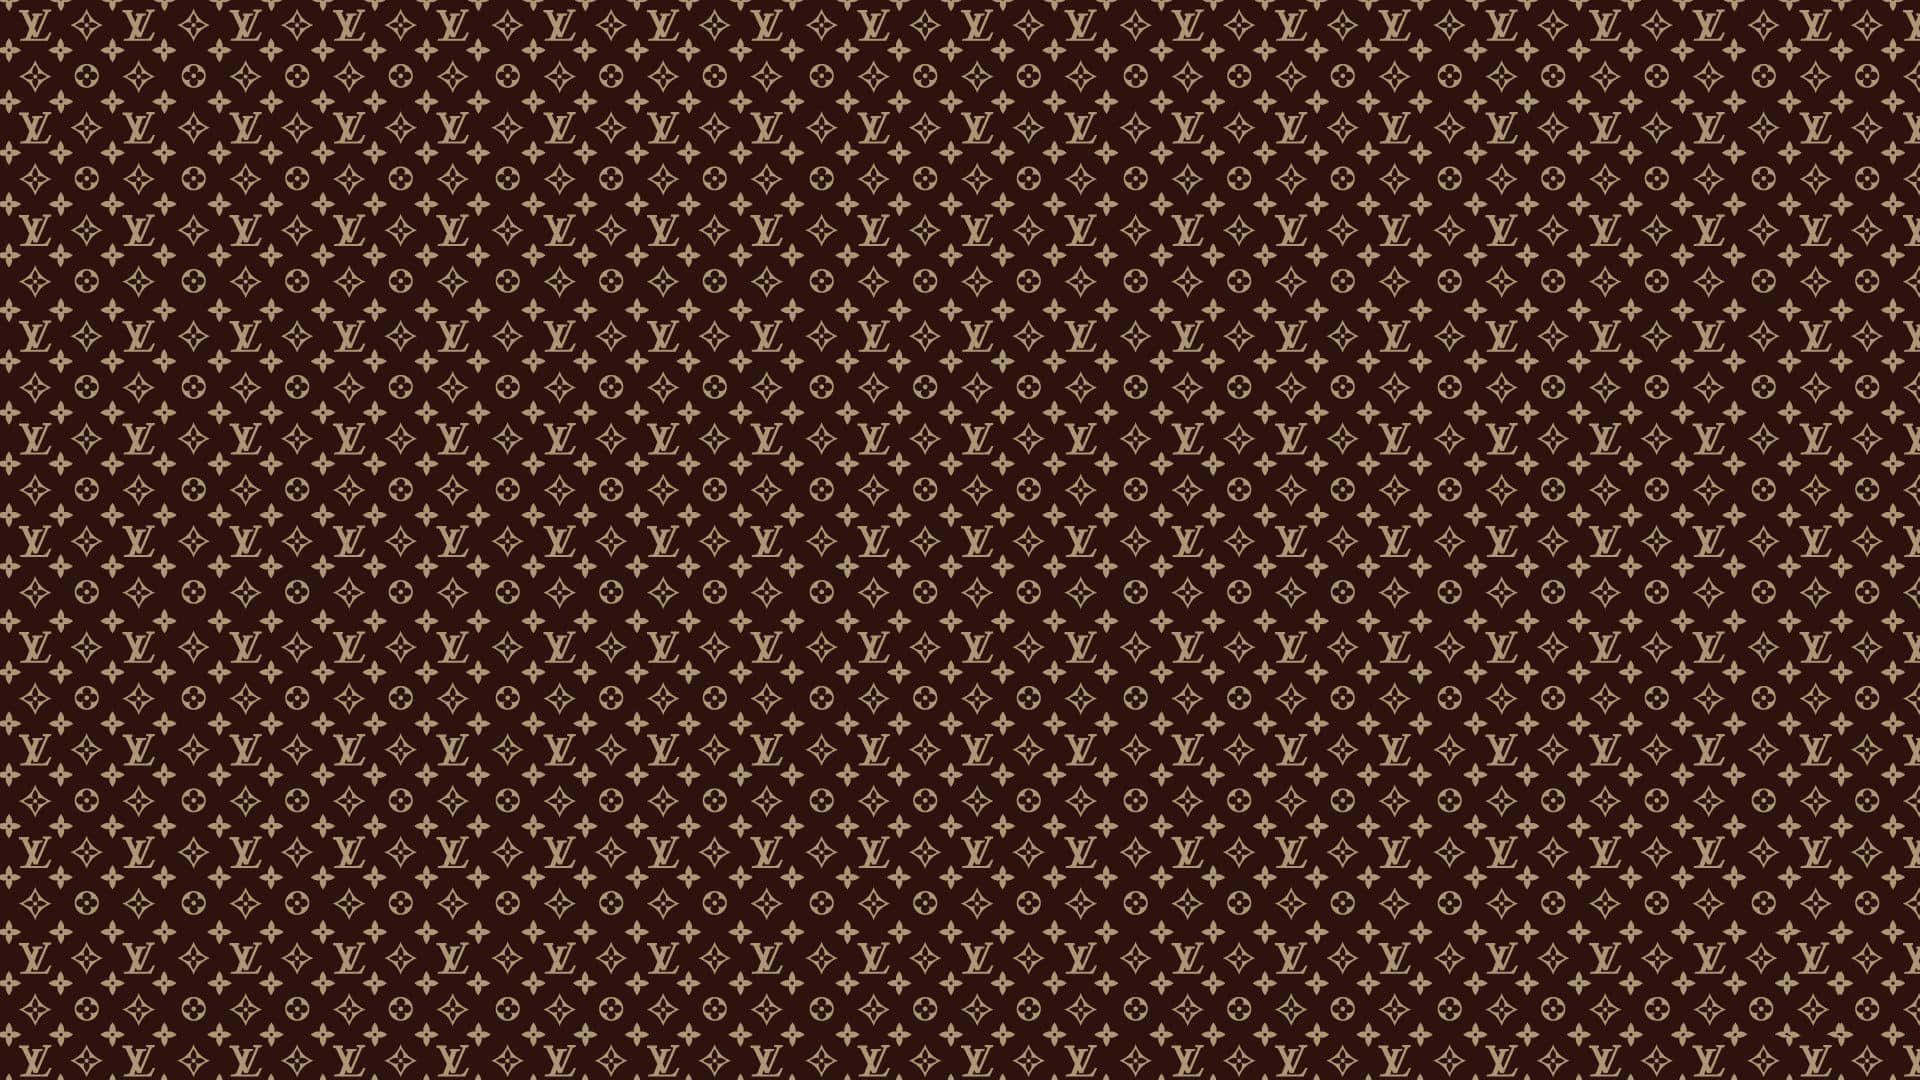 Kleinerlouis Vuitton Brown Monogram Desktop Wallpaper